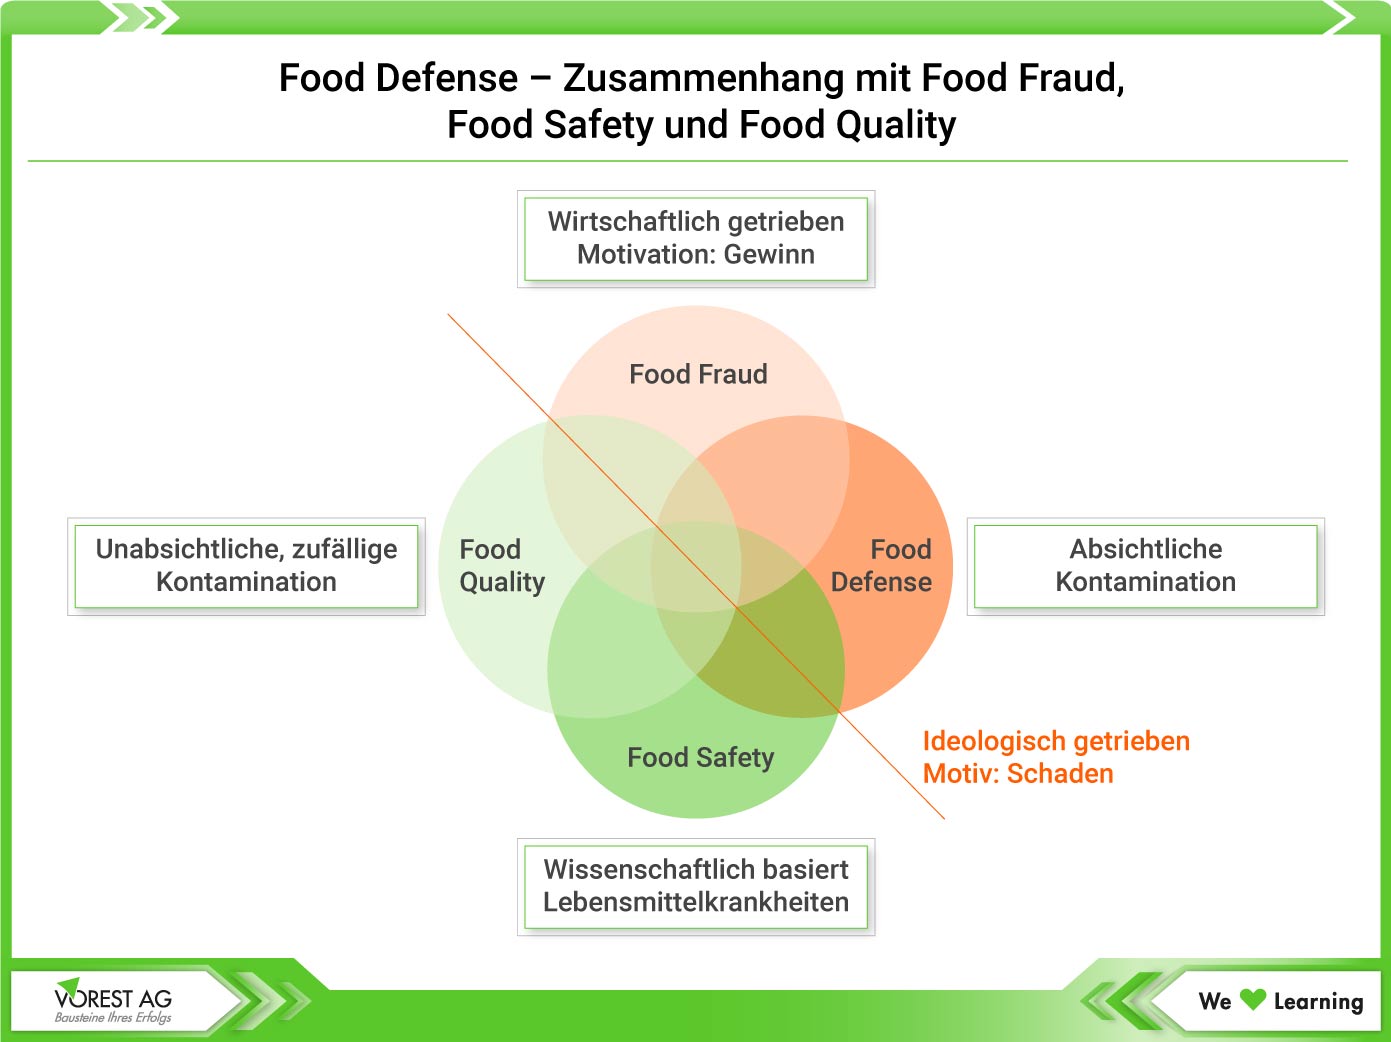 Food Defense im Zusammenhang mit Food Fraud, Food Safety und Food Quality